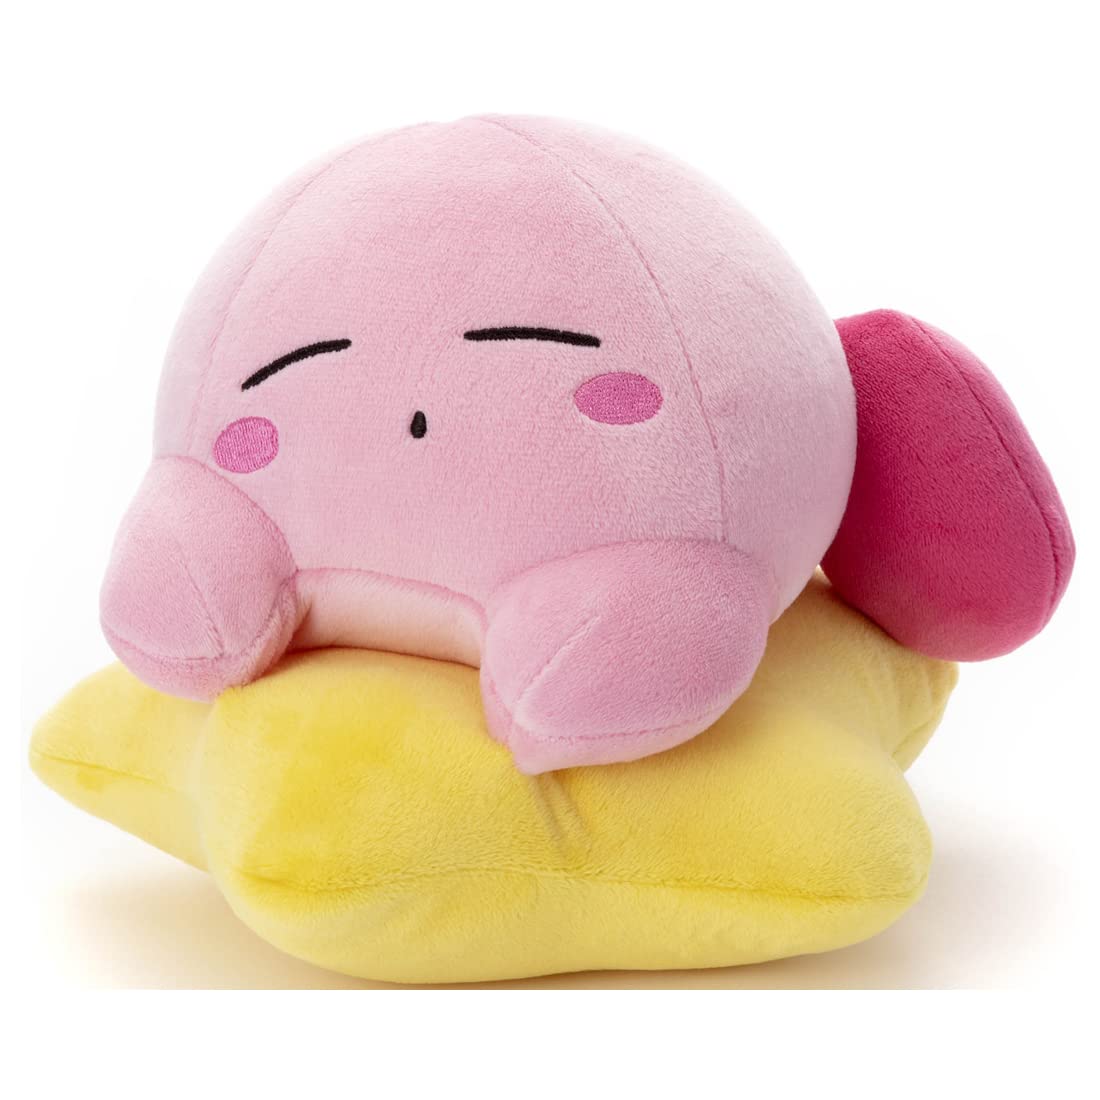 Takara Tomy anuncia este peluche gigante de Kirby en Japón - Nintenderos